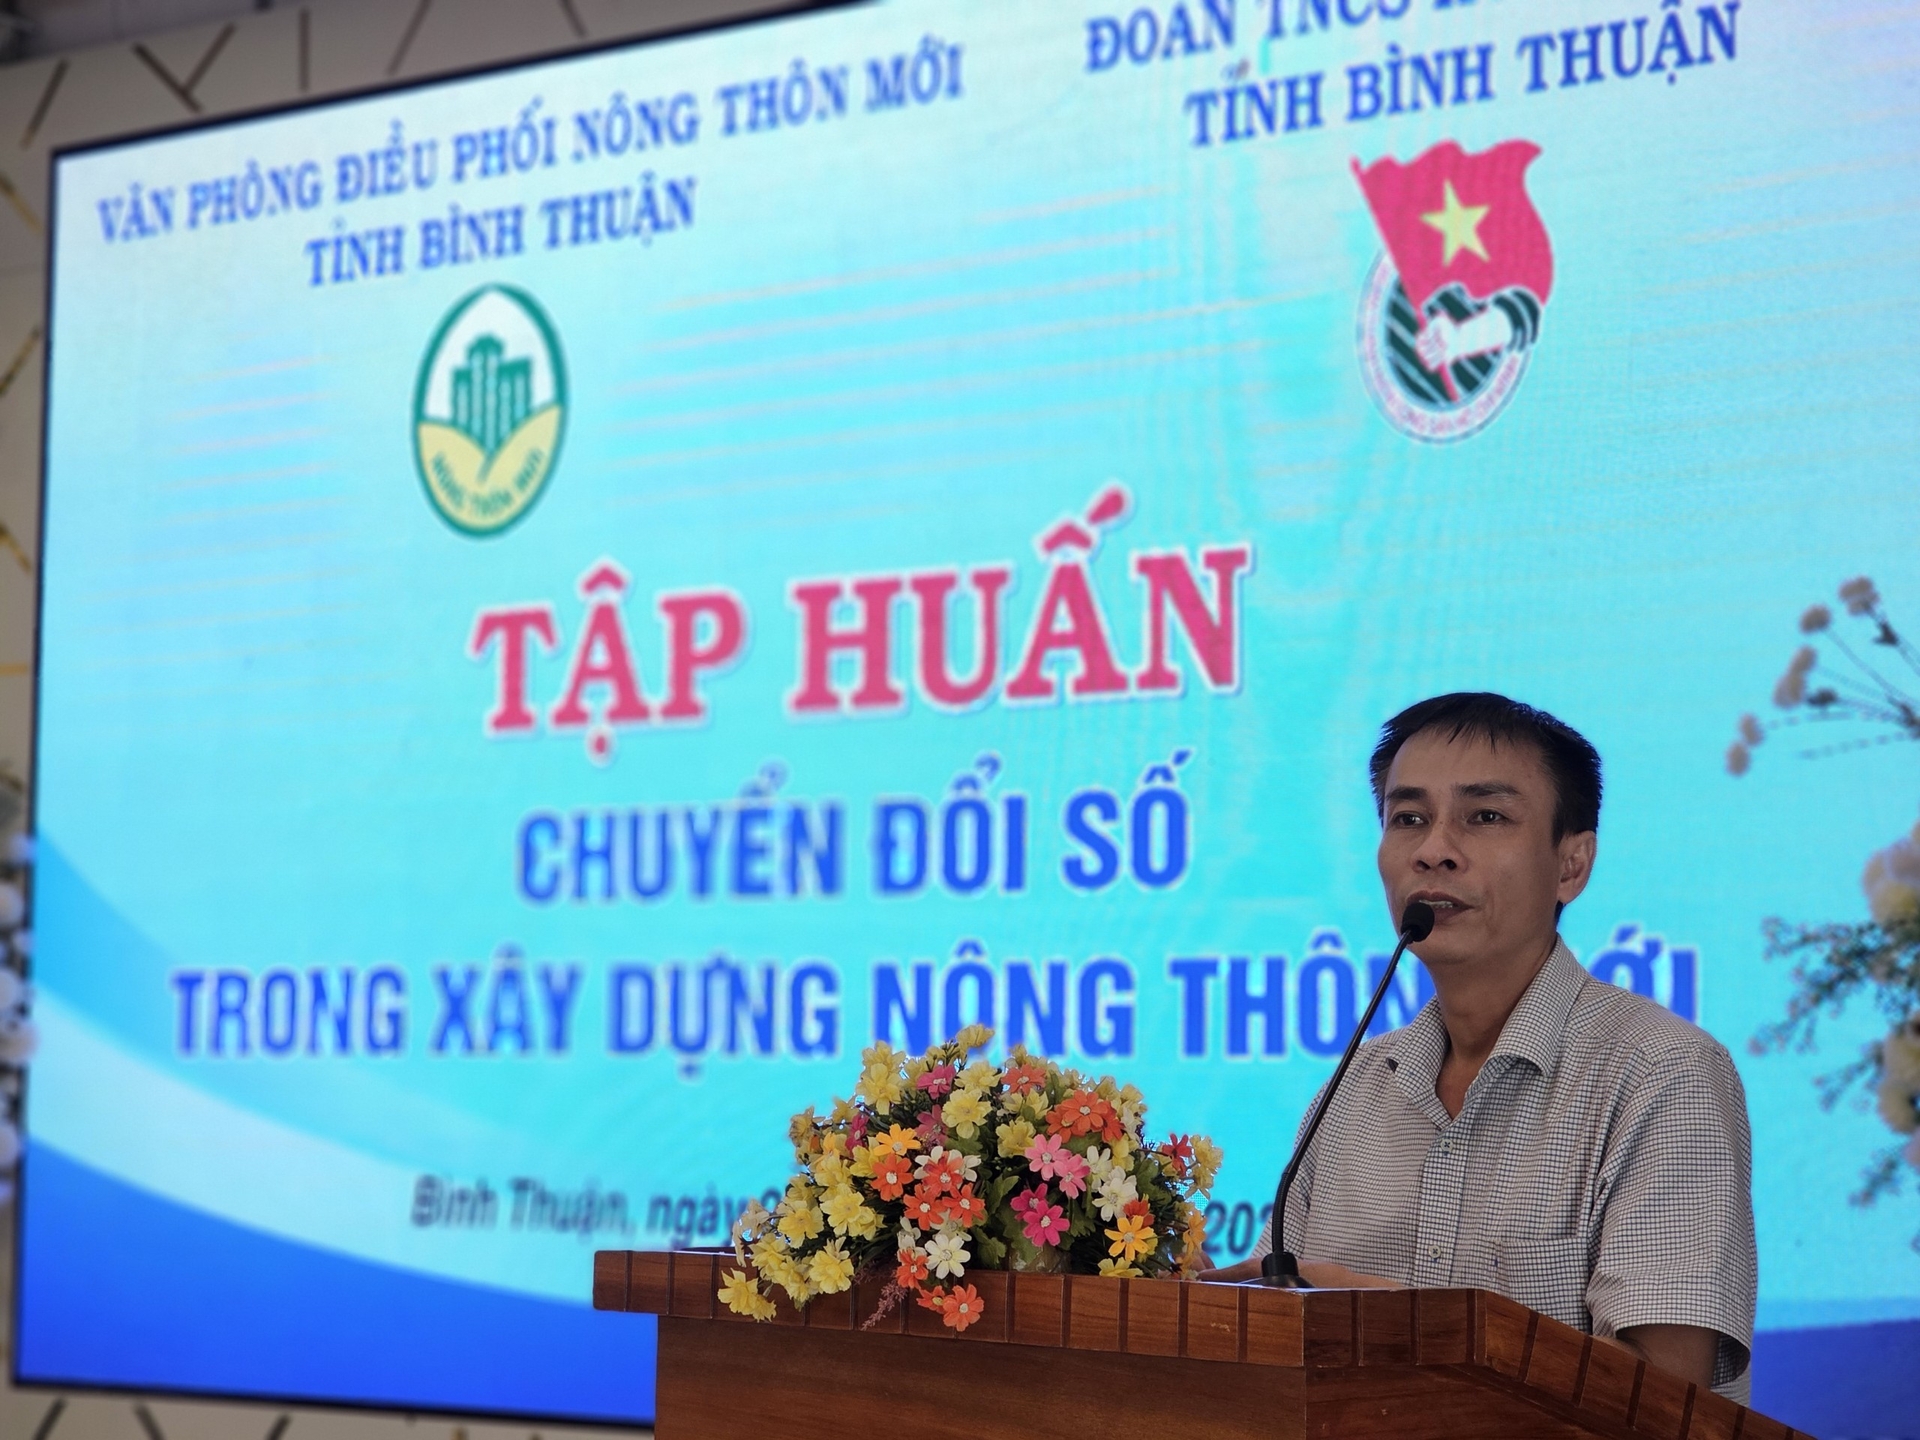 Ông Ngô Thanh Huy, Phó Chánh văn phòng Điều phối nông thôn mới tỉnh Bình Thuận cho biết, chuyển đổi trong xây dựng NTM nhằm góp phần xây dựng NTM đi vào chiều sâu, hiệu quả và bền vững. Ảnh: KS.